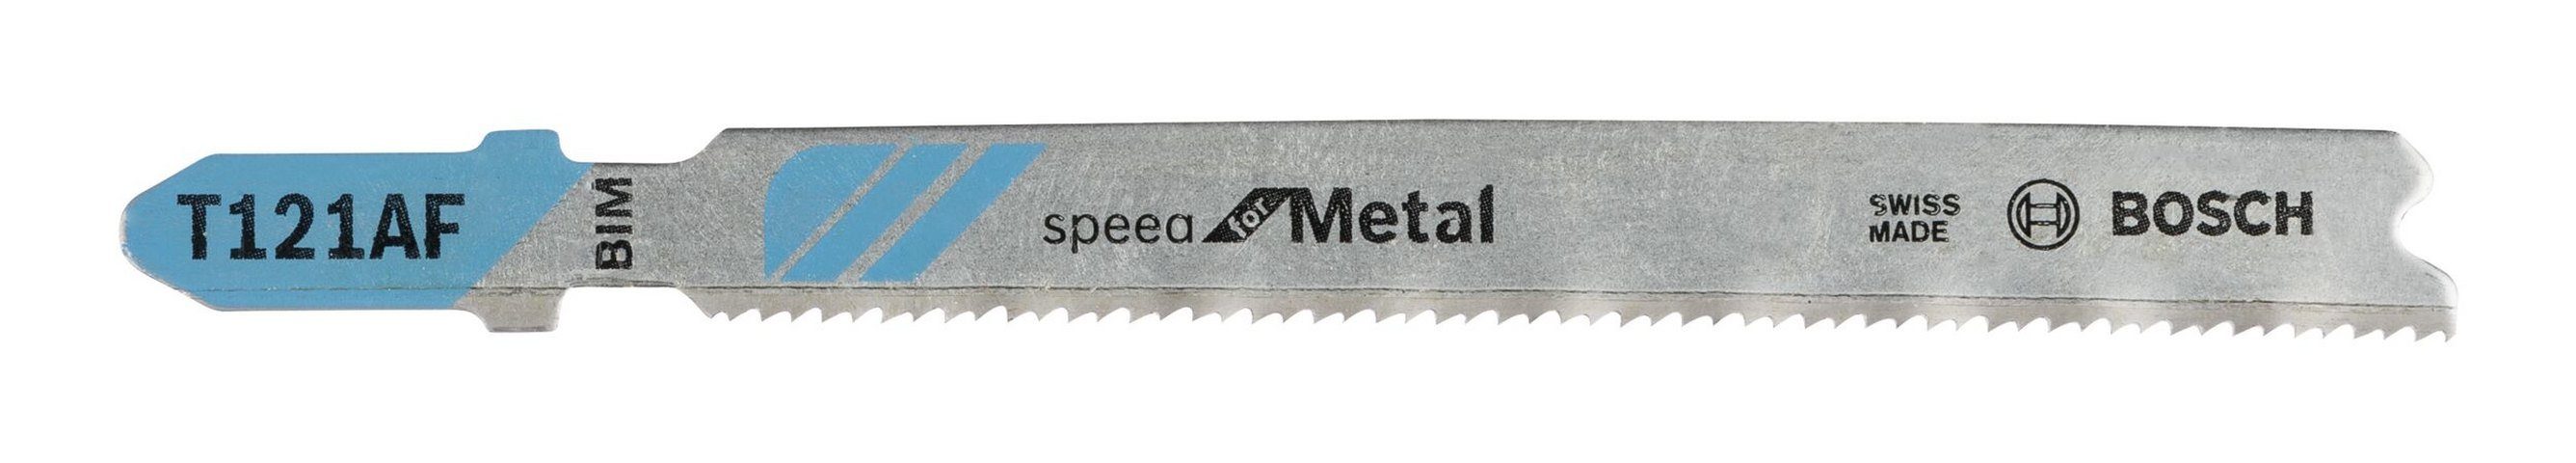 BOSCH Stichsägeblatt (5 Stück), T 121 AF Speed for Metal Bleche - 5er-Pack